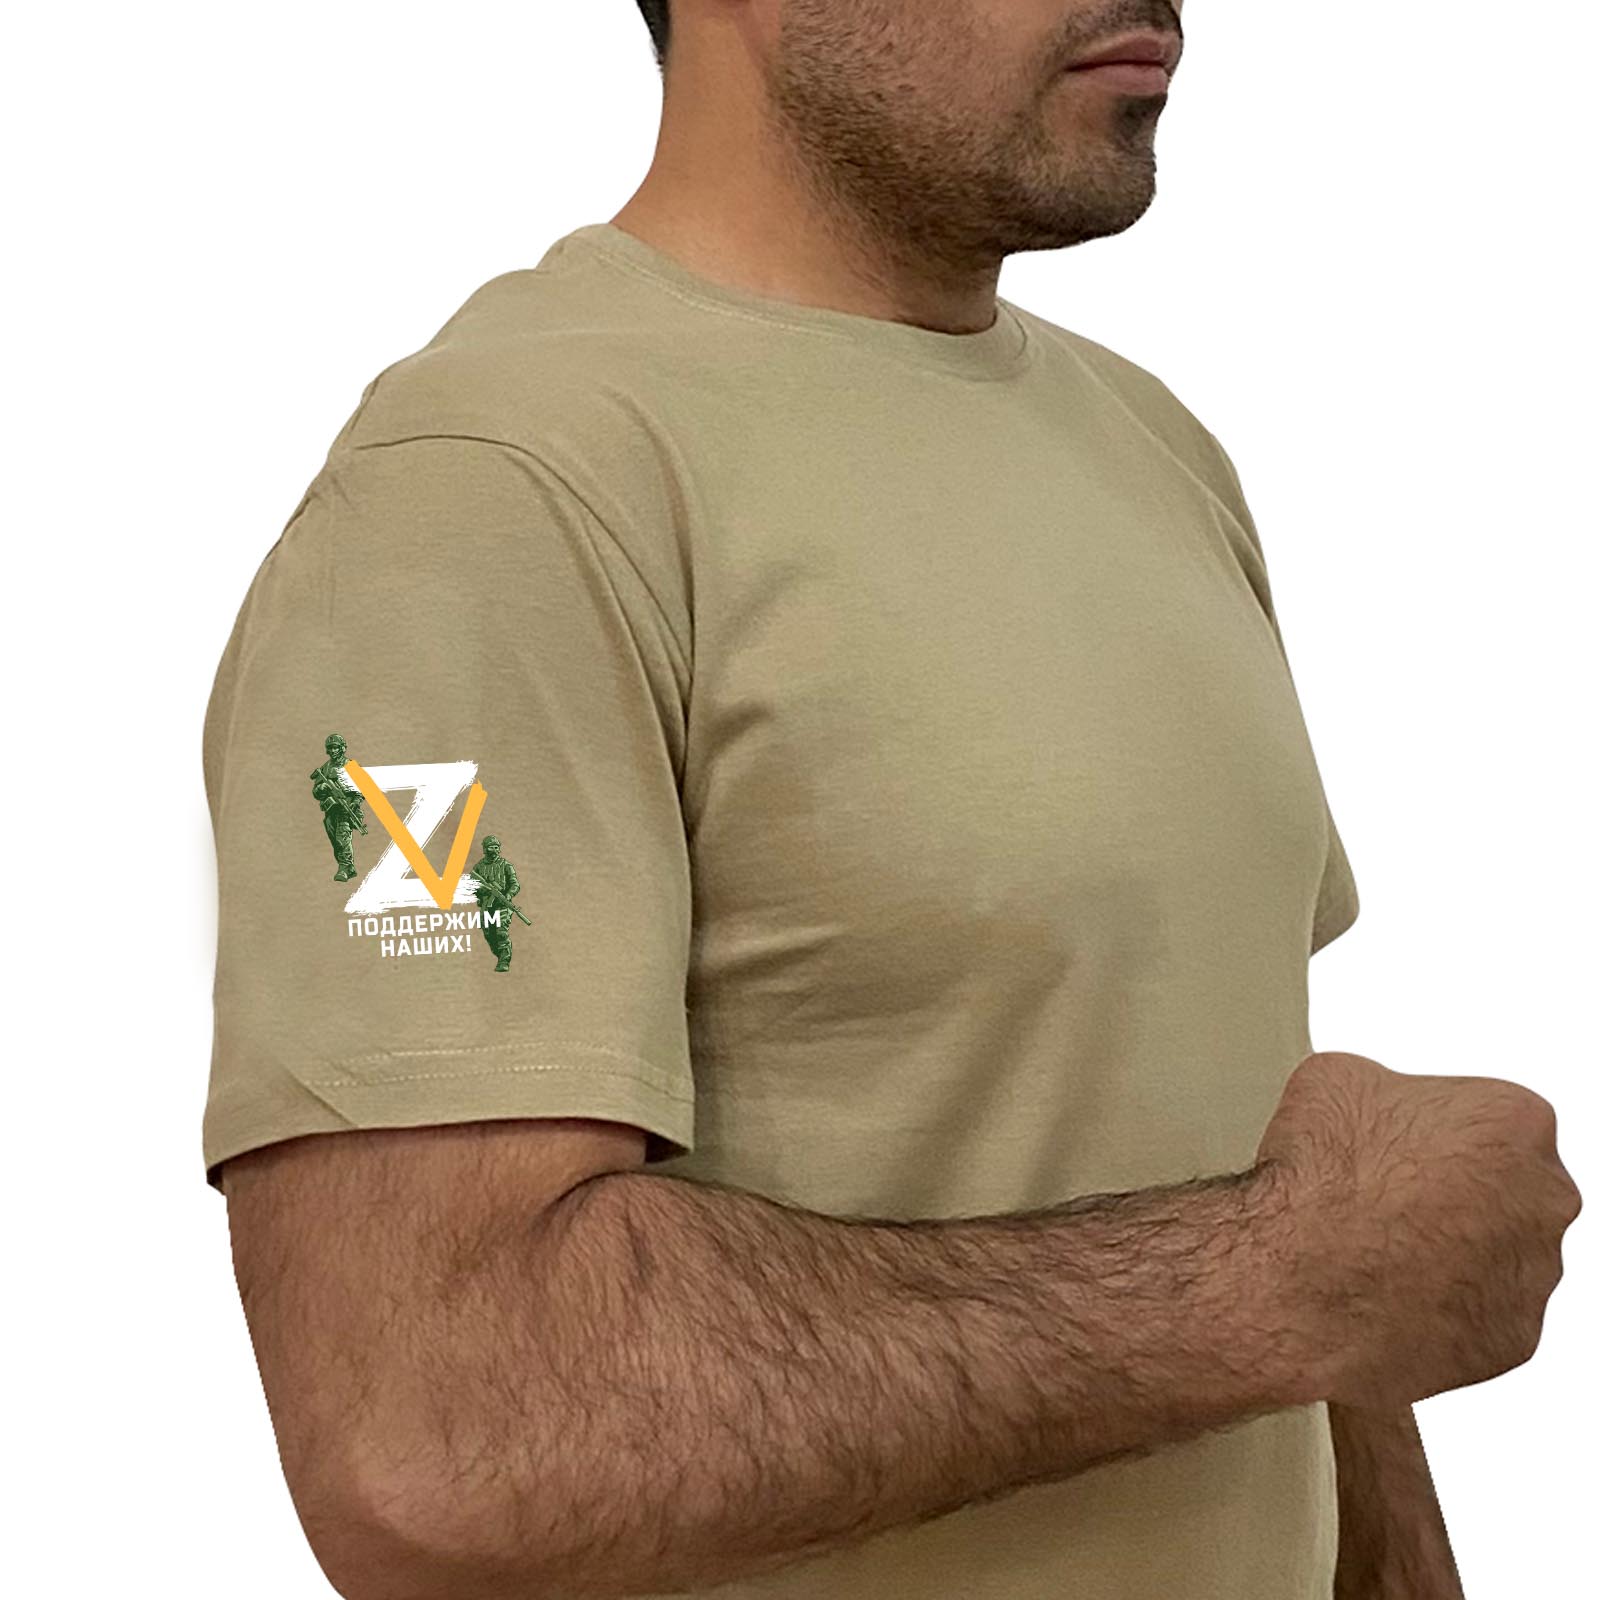 Купить строгую песочную футболку Z V онлайн выгодно